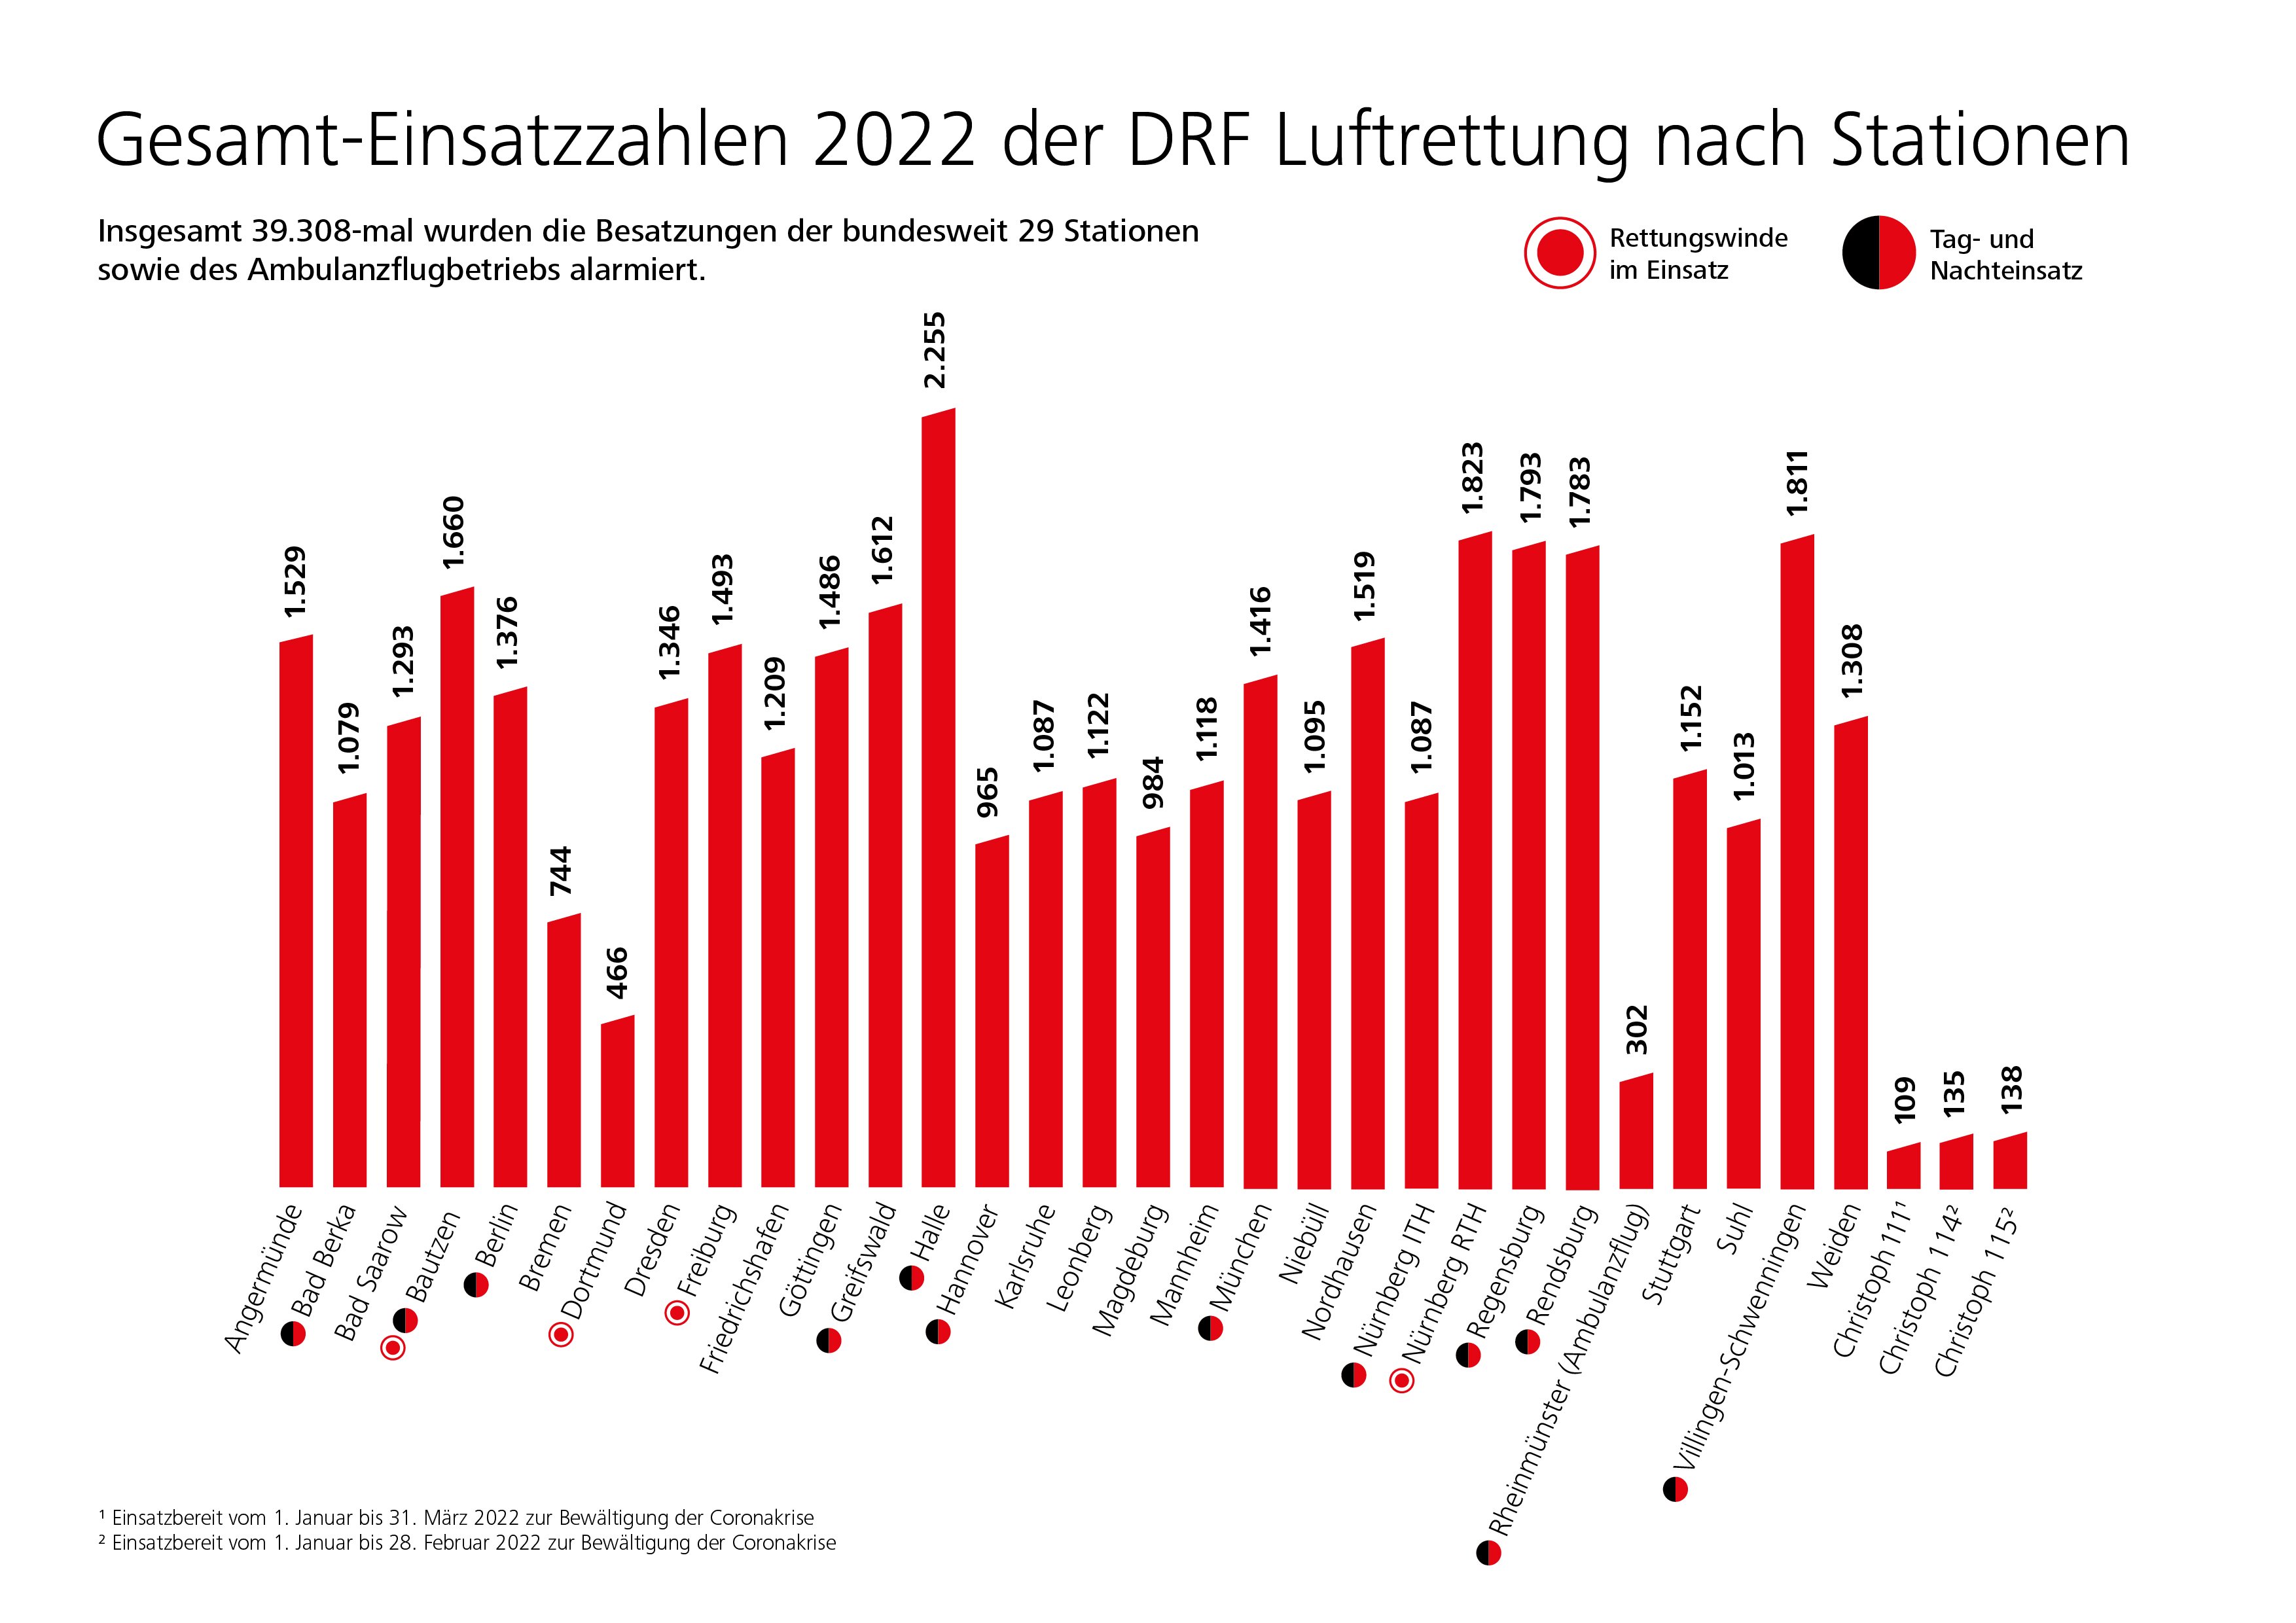 DRF_LUFTRETTUNG_Gesamt-Einsatzzahlen_nach_Stationen_2022_Gesamt-1